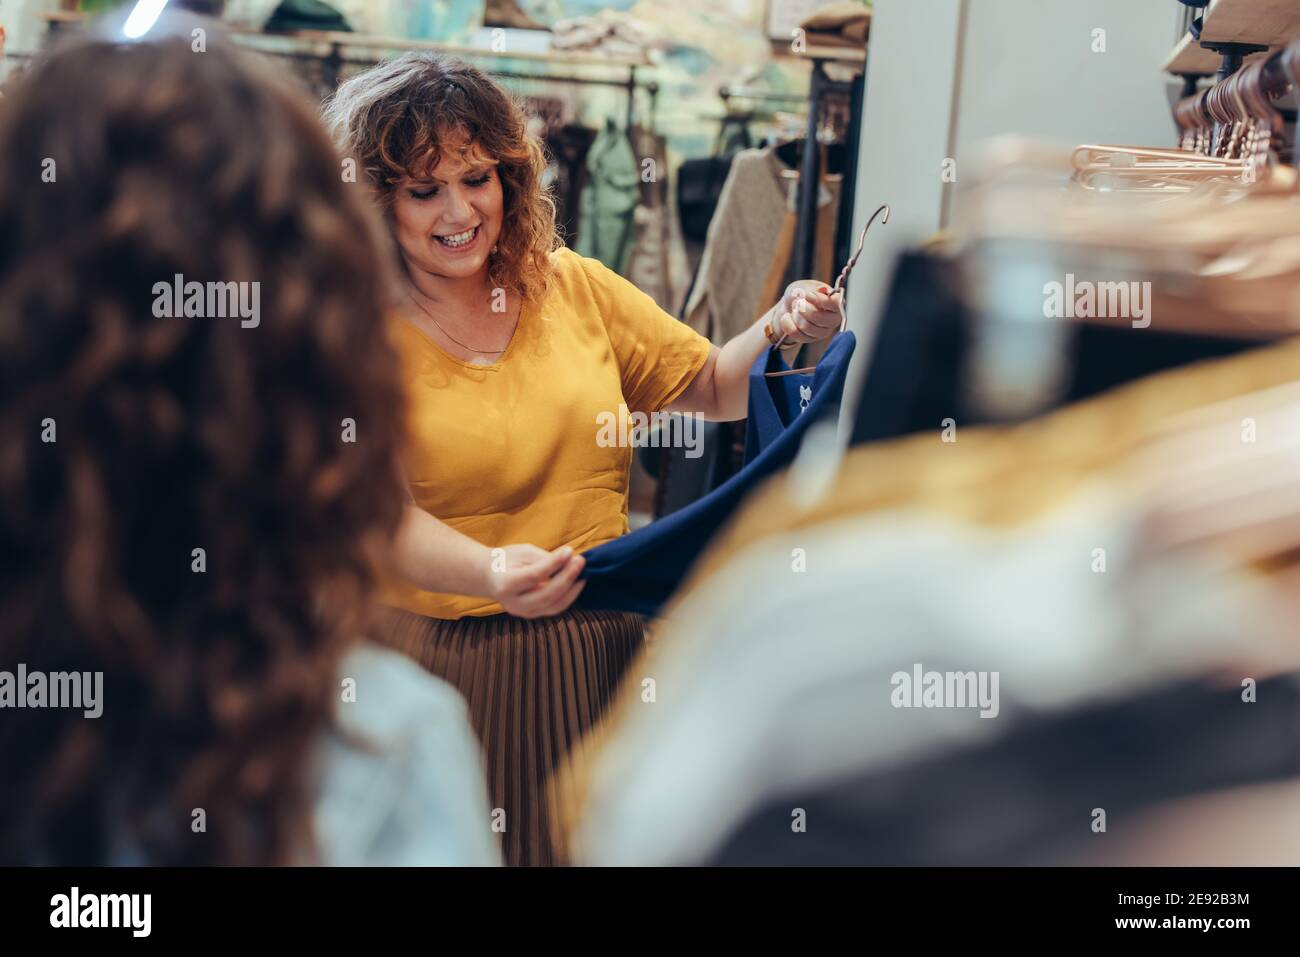 Schöne Frau hält einen Kleiderbügel mit einem neuen Kleid im Modehaus, während Verkäuferin vor sich steht. Weibliche Shopper einkaufen im Bekleidungsgeschäft. Stockfoto